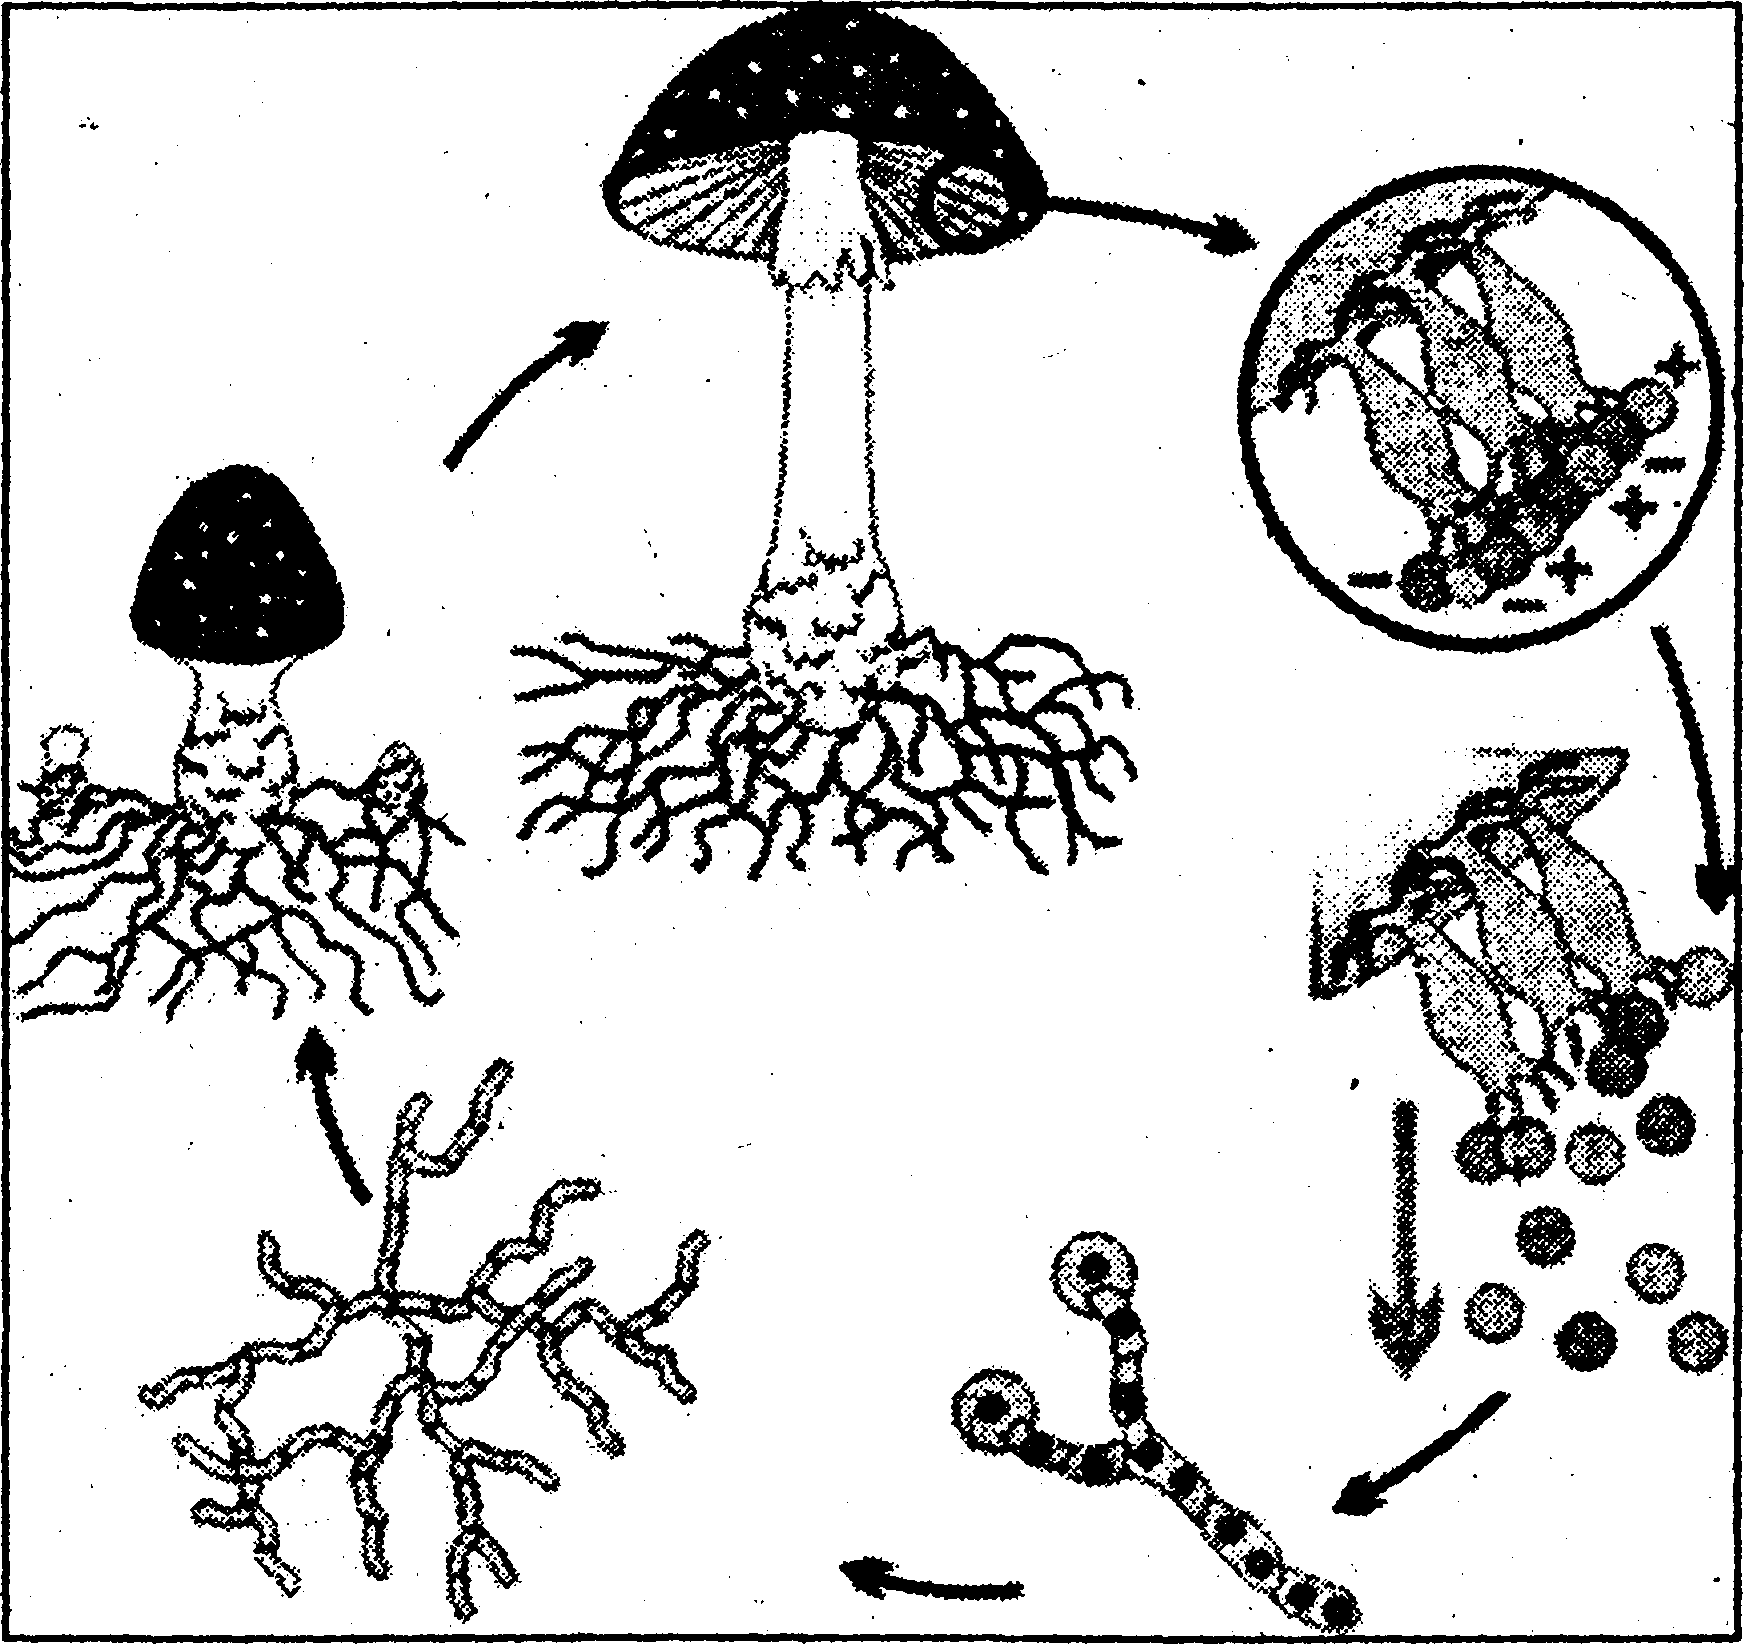 Вегетативные споры грибов. Размножение грибов спорообразование. Цикл развития шляпочного гриба. Размножение шляпочных грибов спорами. Бесполое размножение гриба.